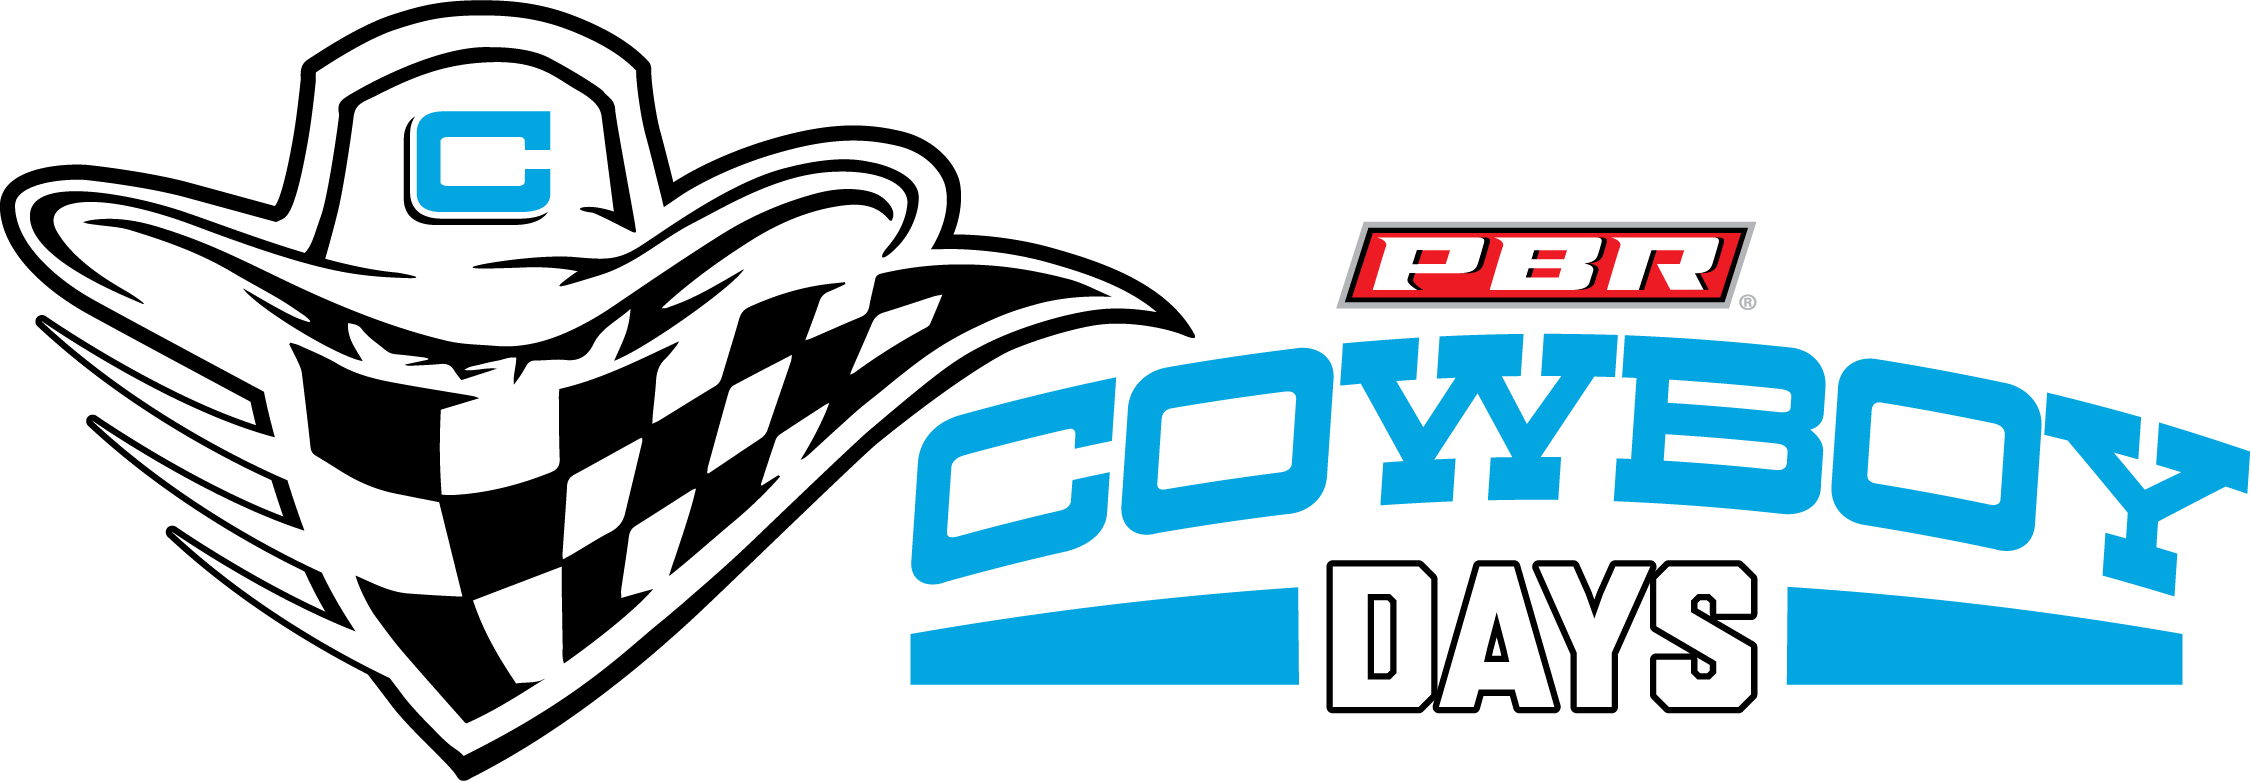 PBR Cowboy Days logo